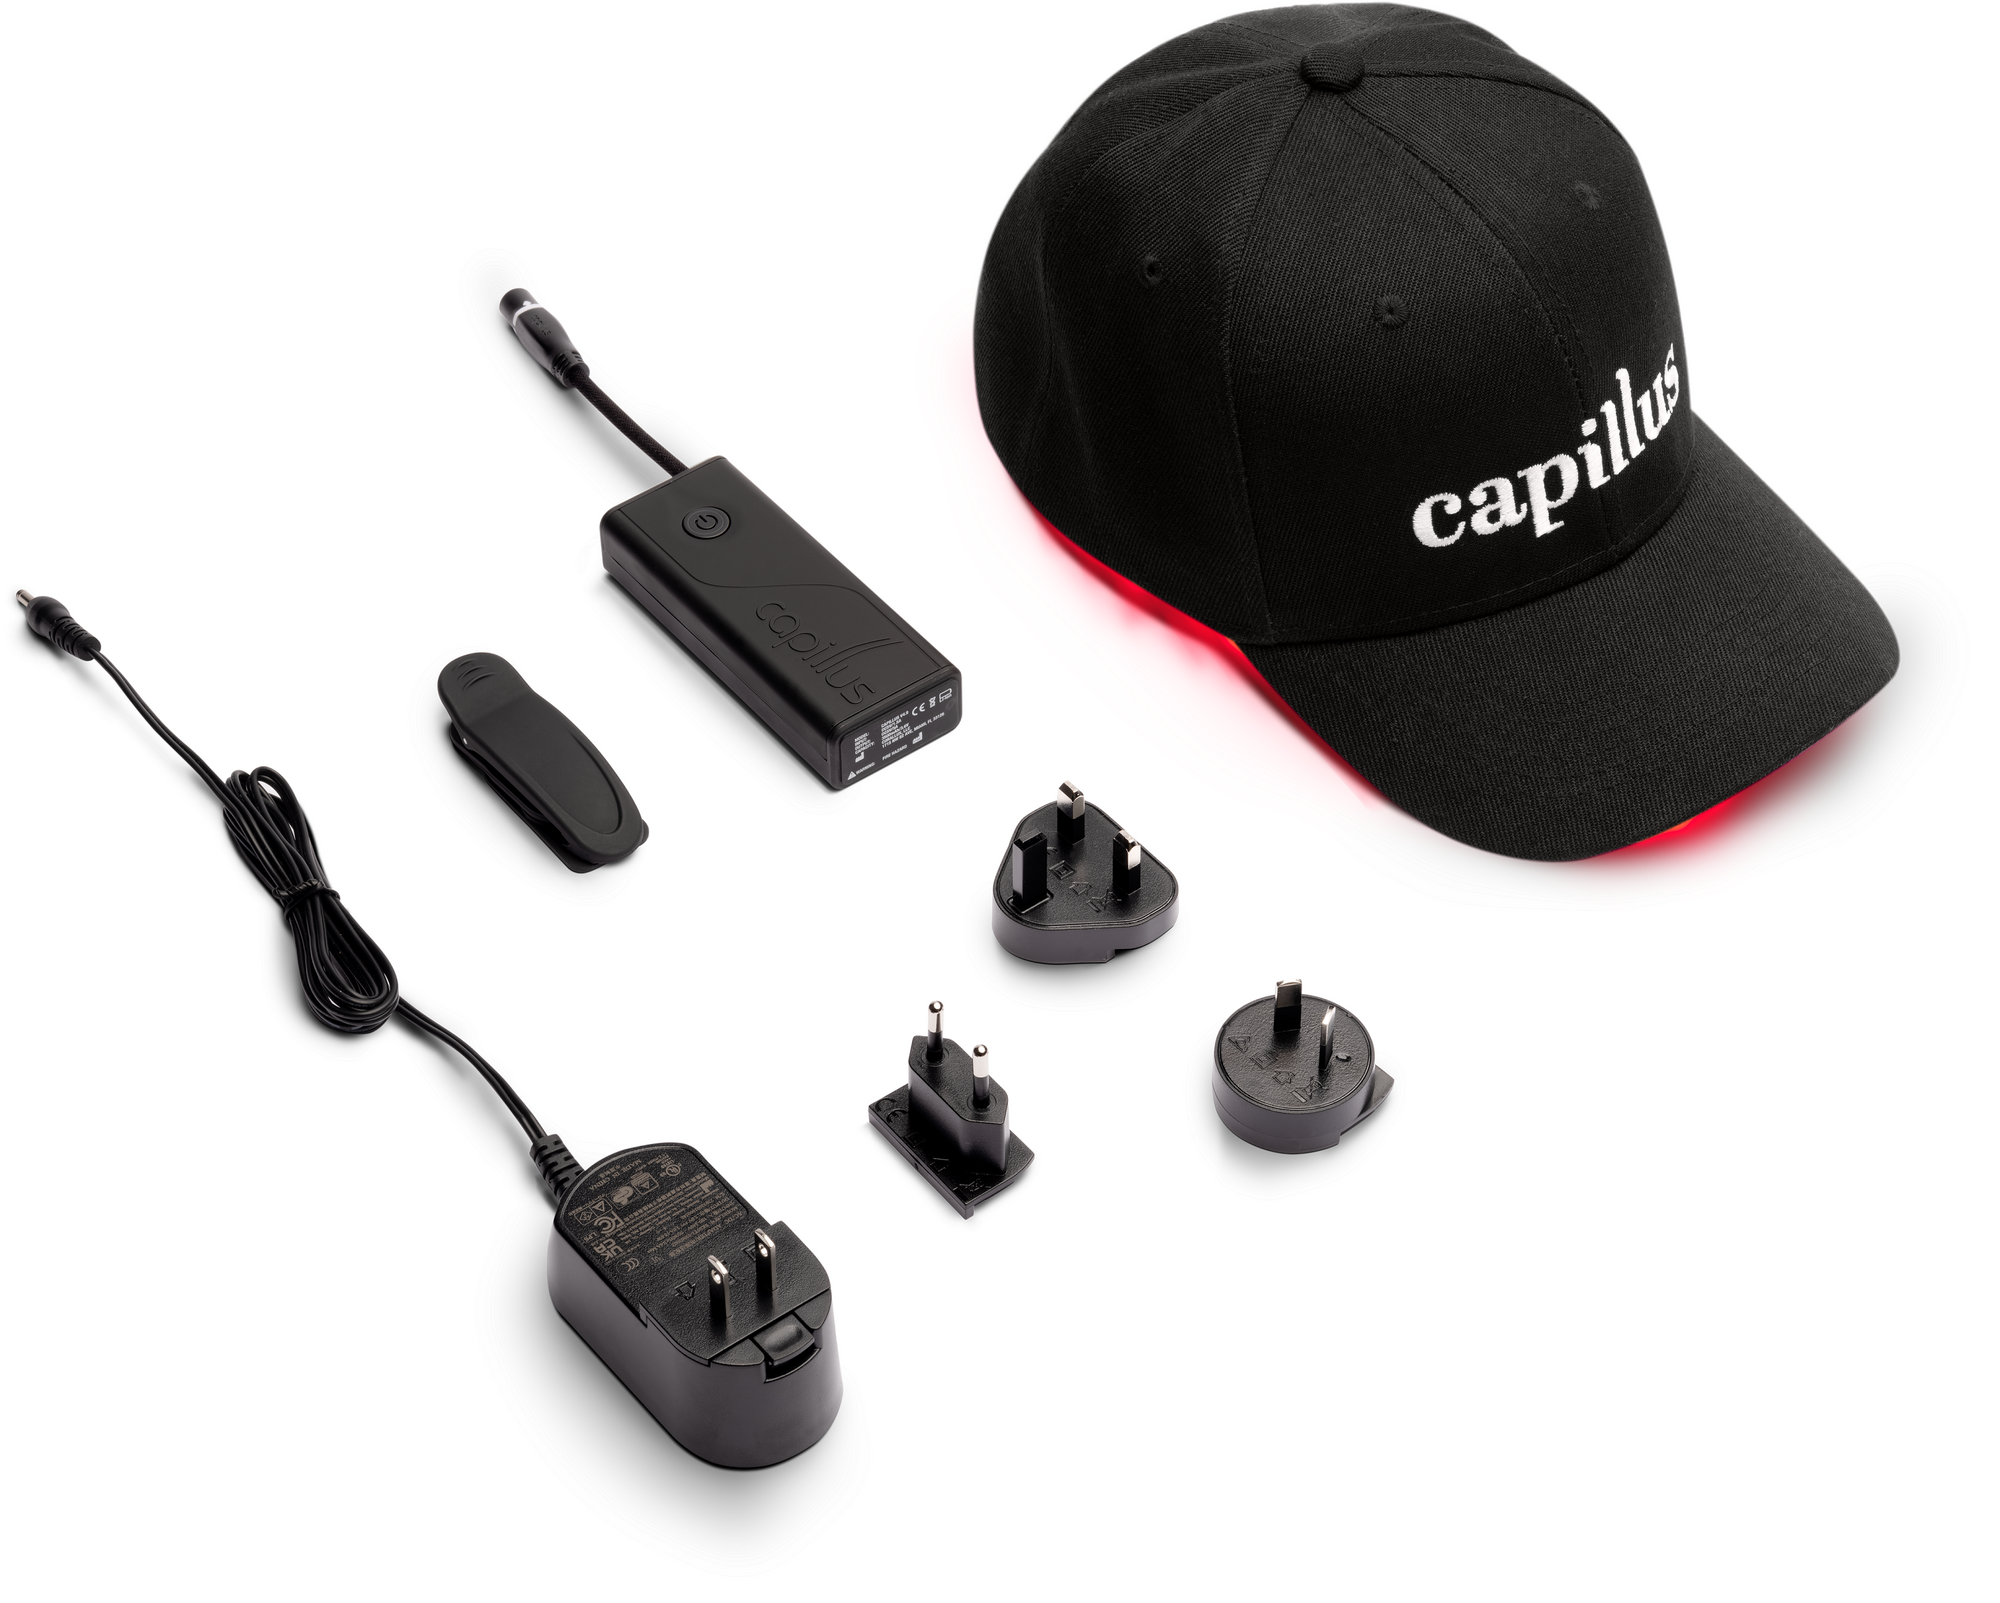 Capillus Plus S1 | 214 laser - Bluetooth